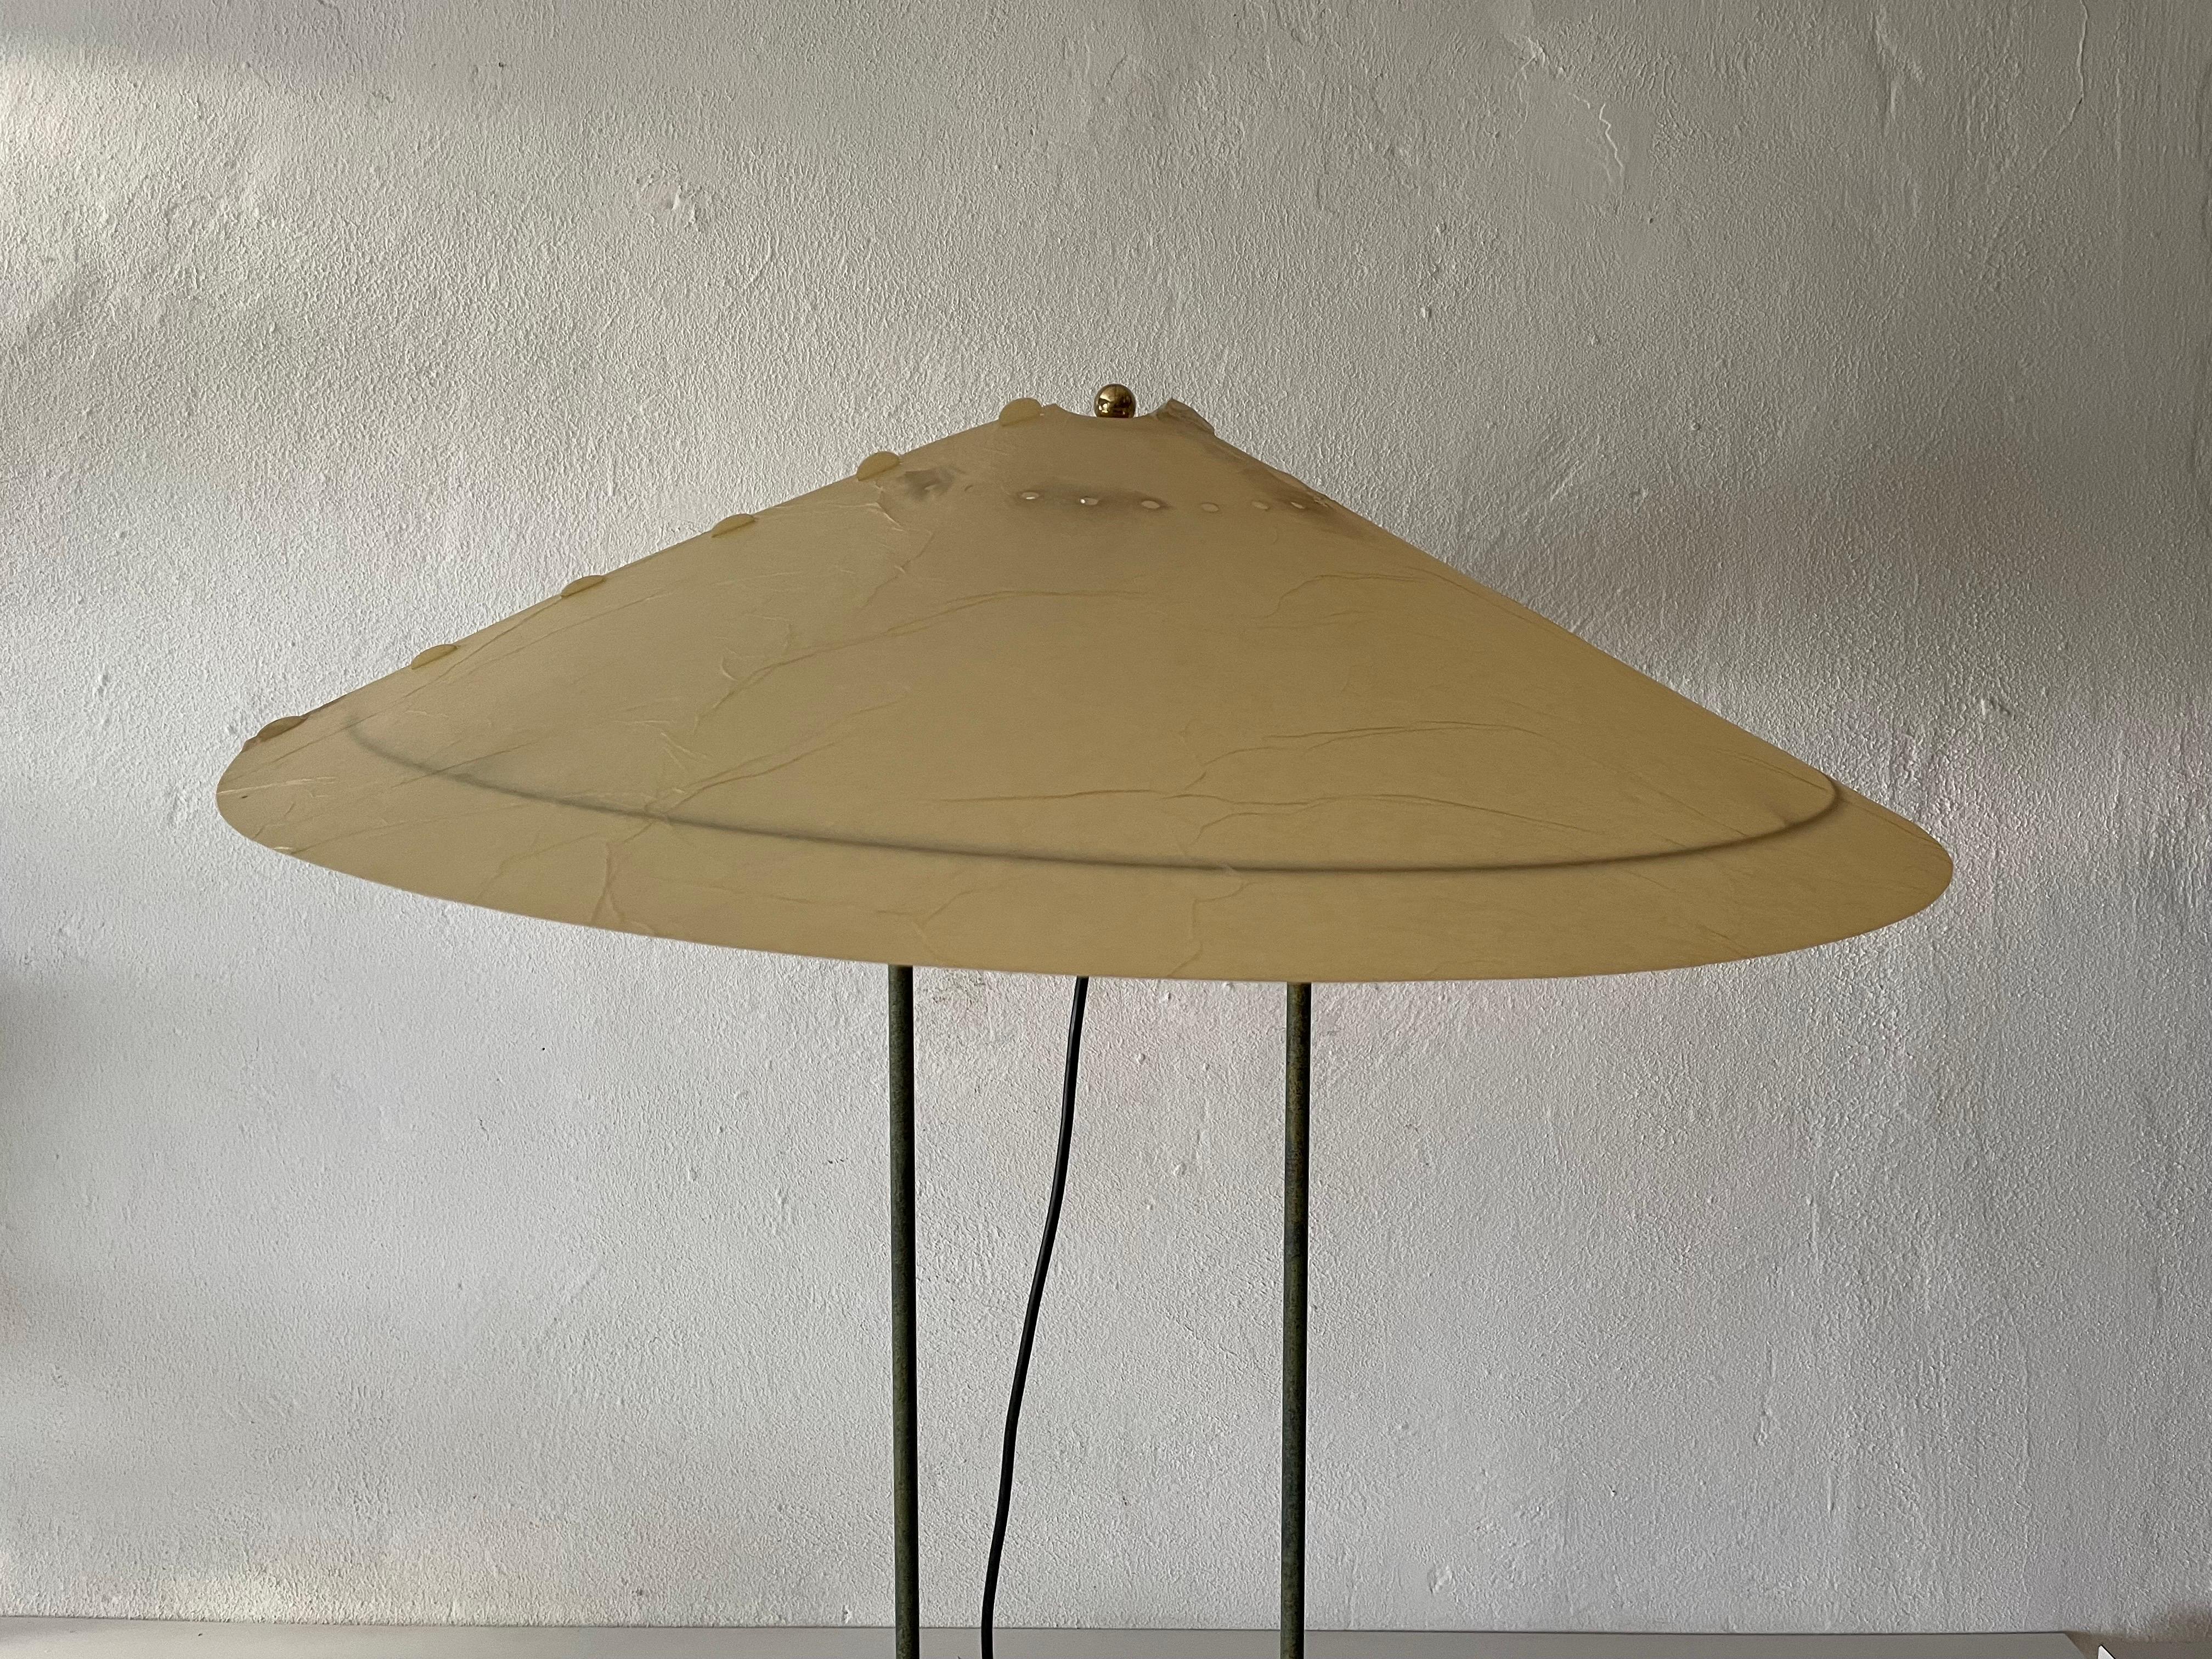 Exclusive Cocoon Plastic Paper and Green Metal Body Industrial Table Lamp, 1950s Allemagne
 
Abat-jour Cocoon et corps en métal

Il y a quelques petites déchirures sur l'abat-jour de la lampe. Vous pouvez le voir sur les photos.

Design minimal et